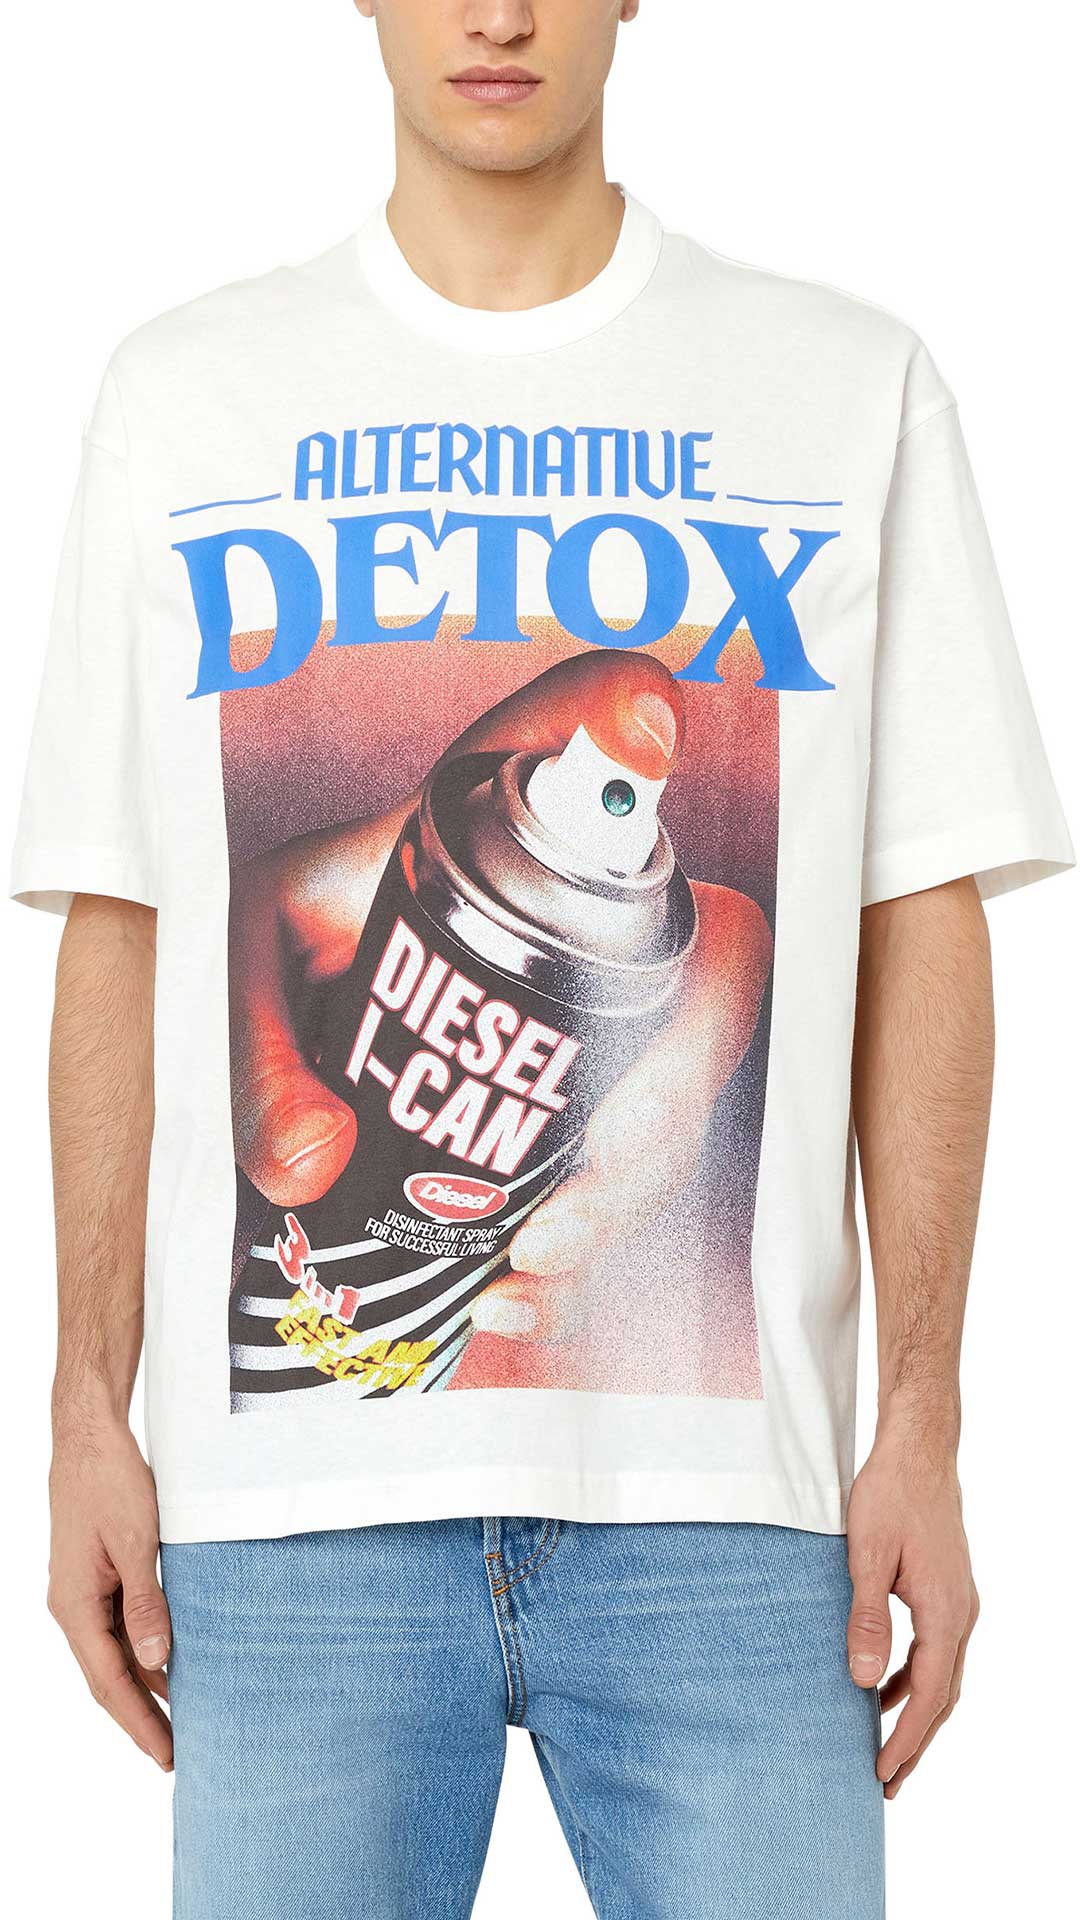 Diesel Camiseta Diesel Con Grafico Alternative Detox – M, Blanco